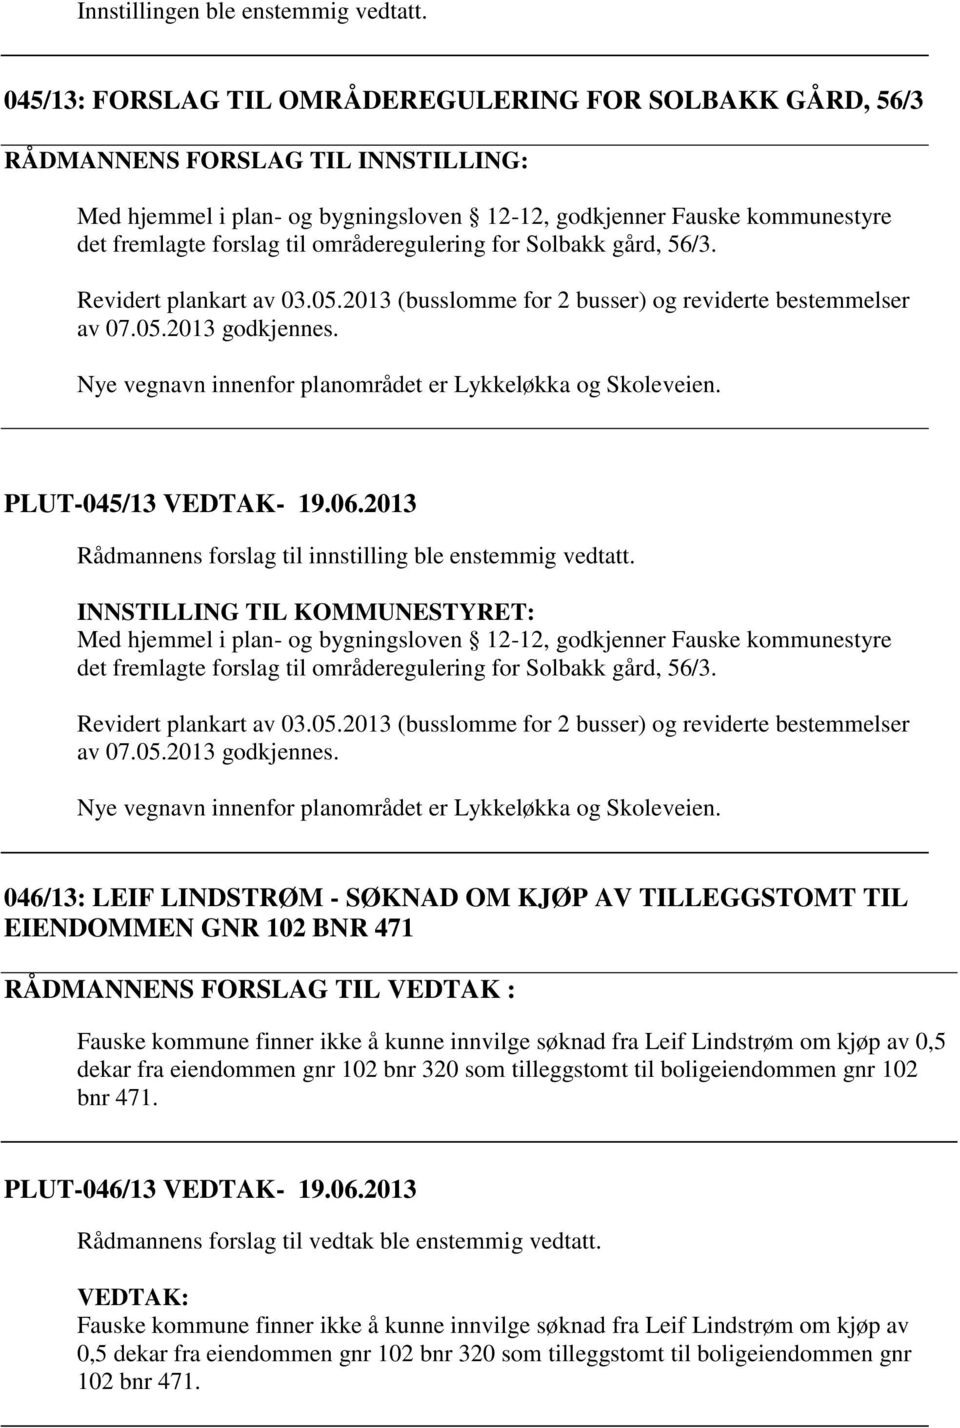 områderegulering for Solbakk gård, 56/3. Revidert plankart av 03.05.2013 (busslomme for 2 busser) og reviderte bestemmelser av 07.05.2013 godkjennes.